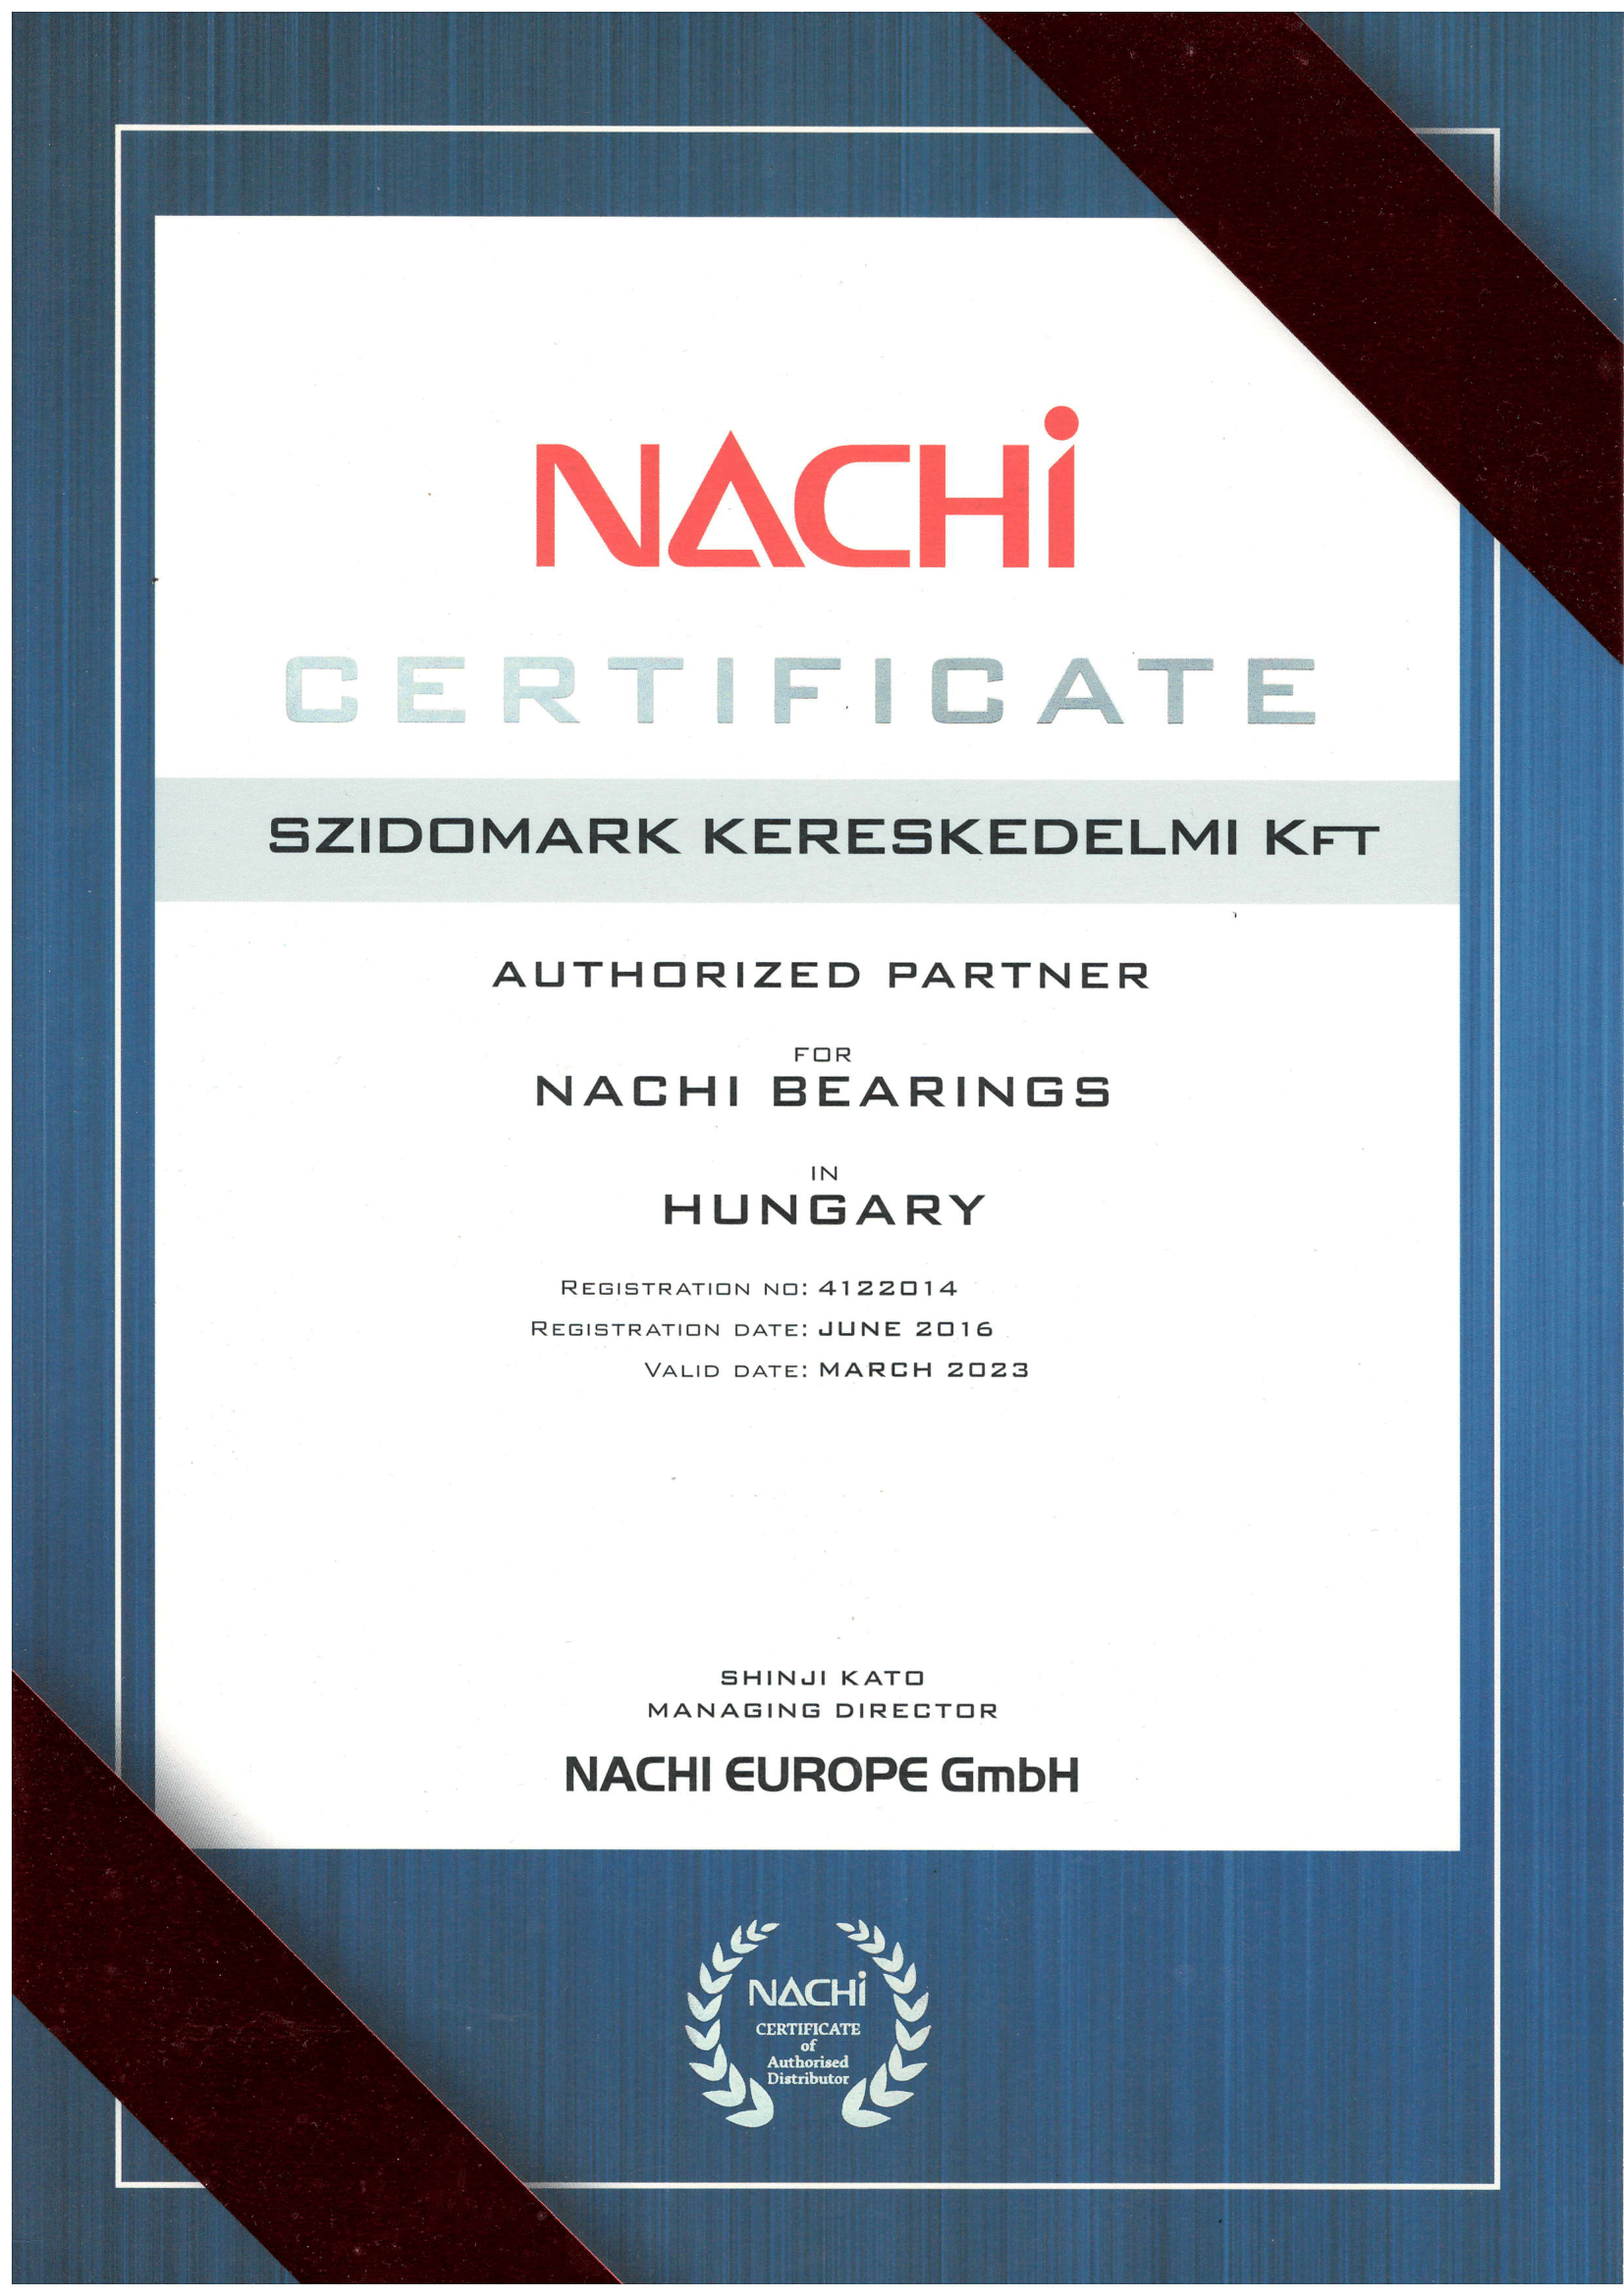 nachi_certificate